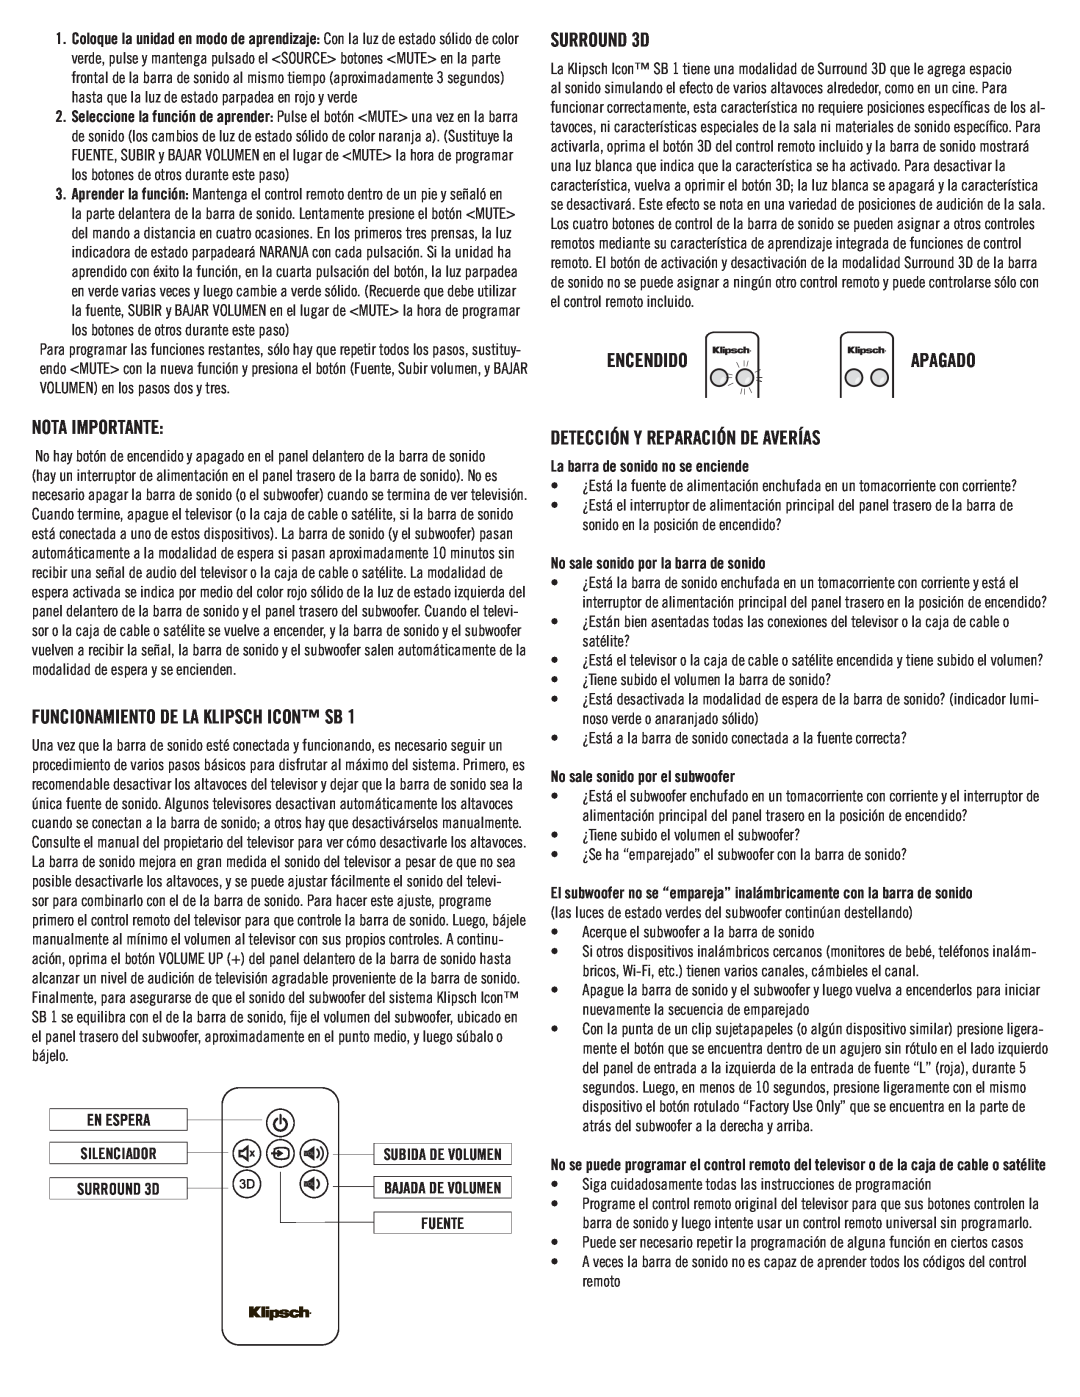 Klipsch SB 1 owner manual SURROUND 3D, Encendido, Nota Importante, FUNCIONAMIENTO DE LA Klipsch Icon SB, En Espera 